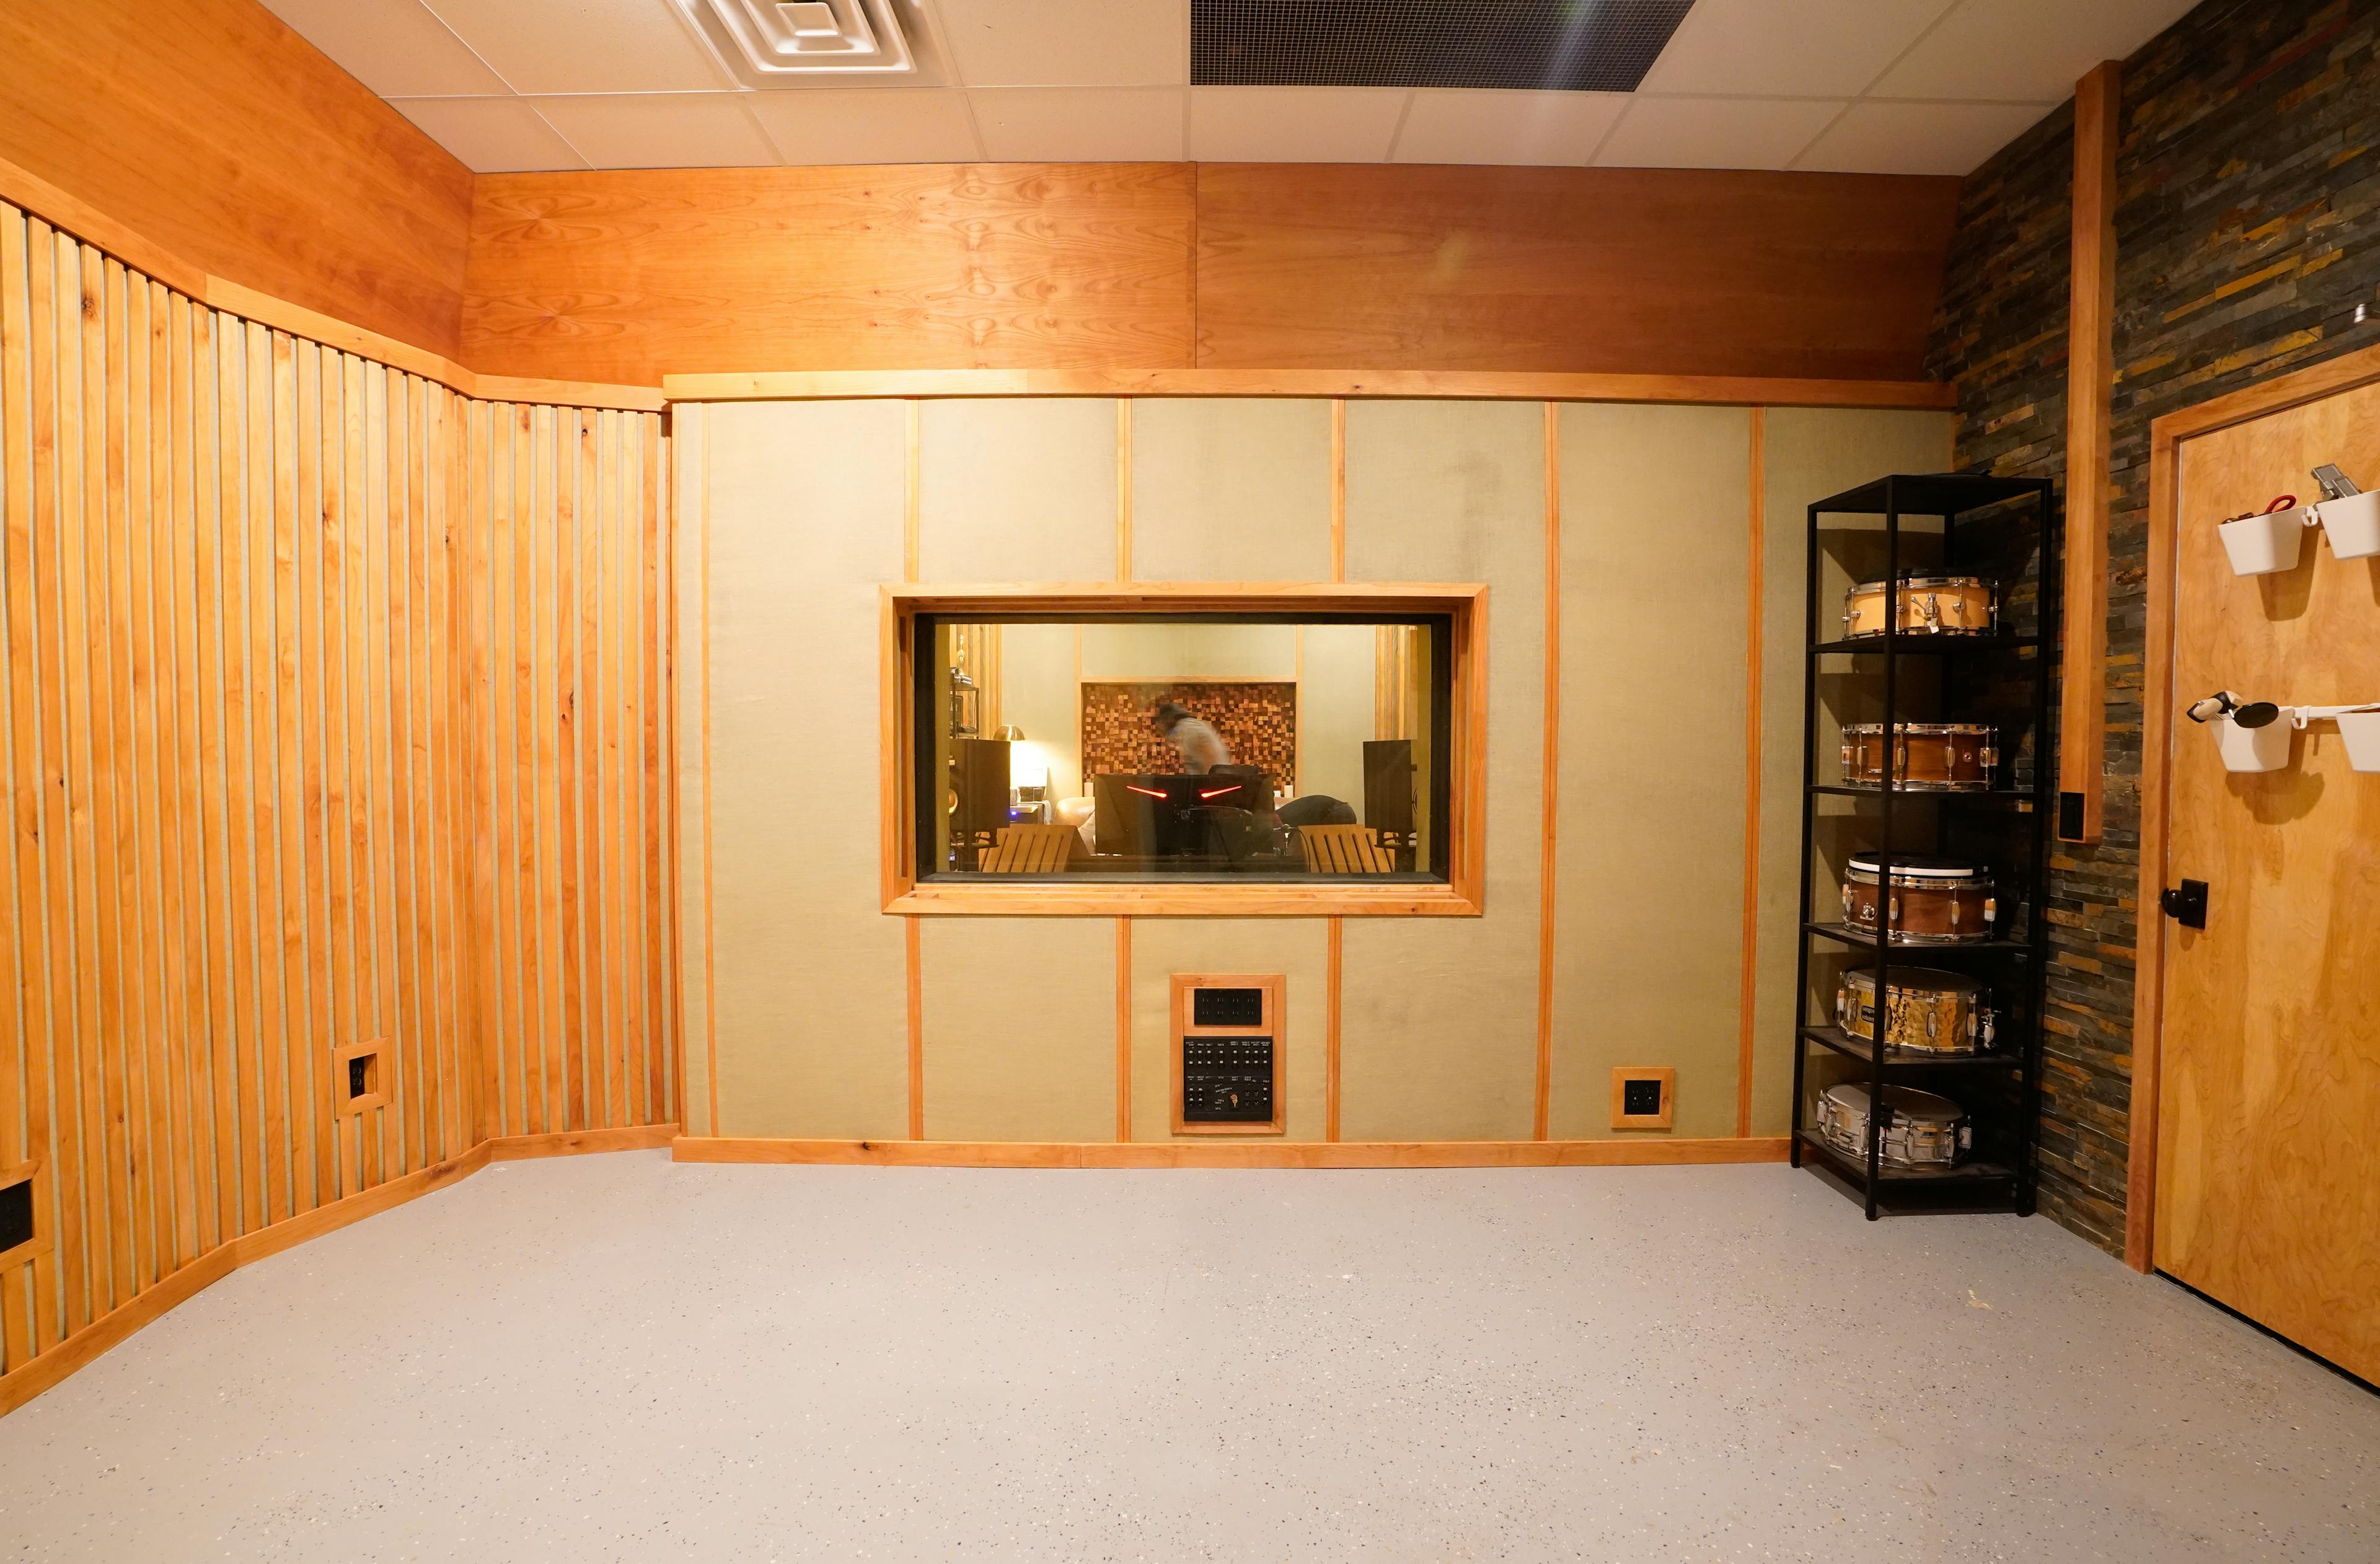 Picture of Dryw's studio